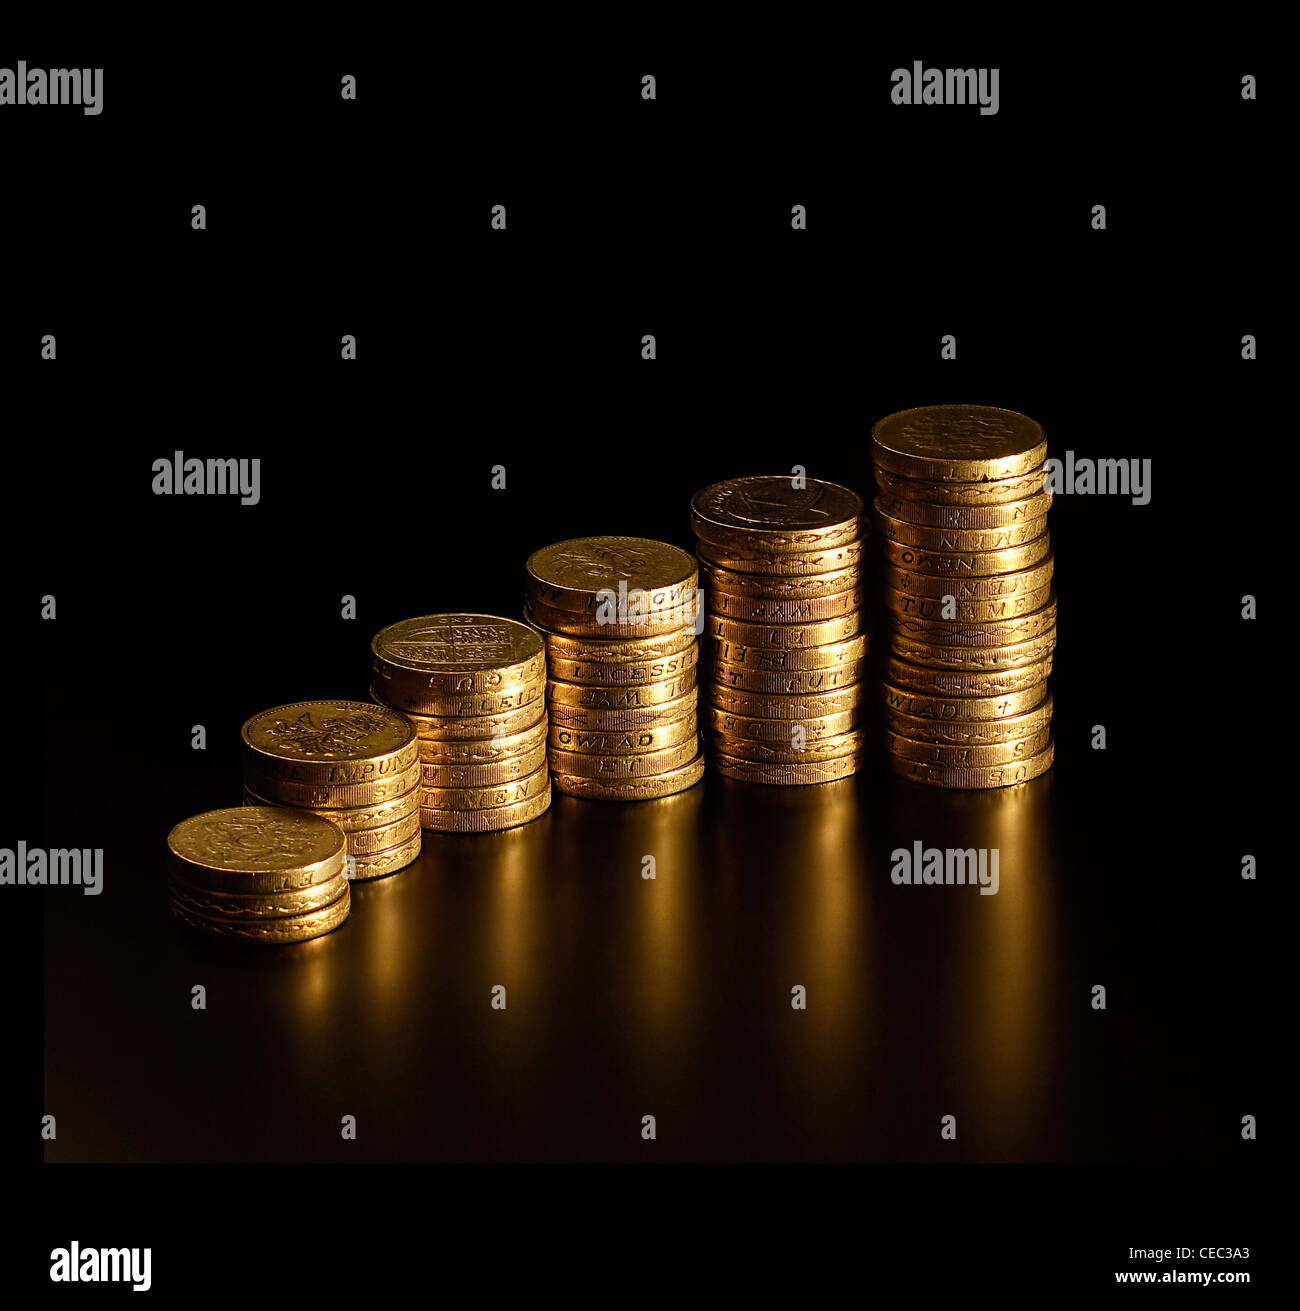 Cada vez más altos montones de British Pound Coins semejando un mayor beneficio gráfico Foto de stock